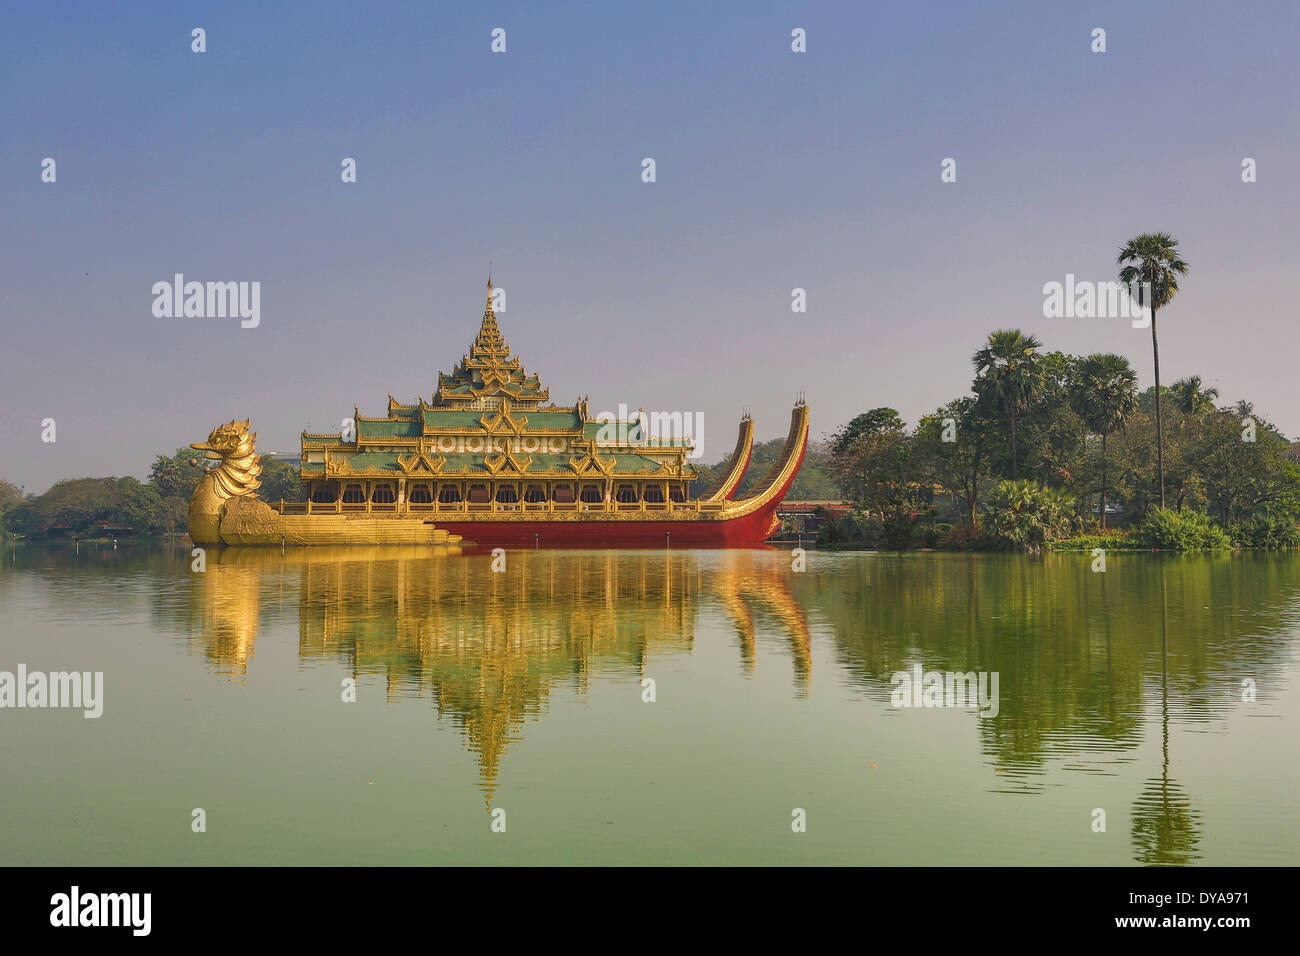 Myanmar Birmania Asia Paya Yangon Kandawgyi Rangoon architettura flottante coloratissimi fiori famoso lago di immagine resta di riflessione Foto Stock